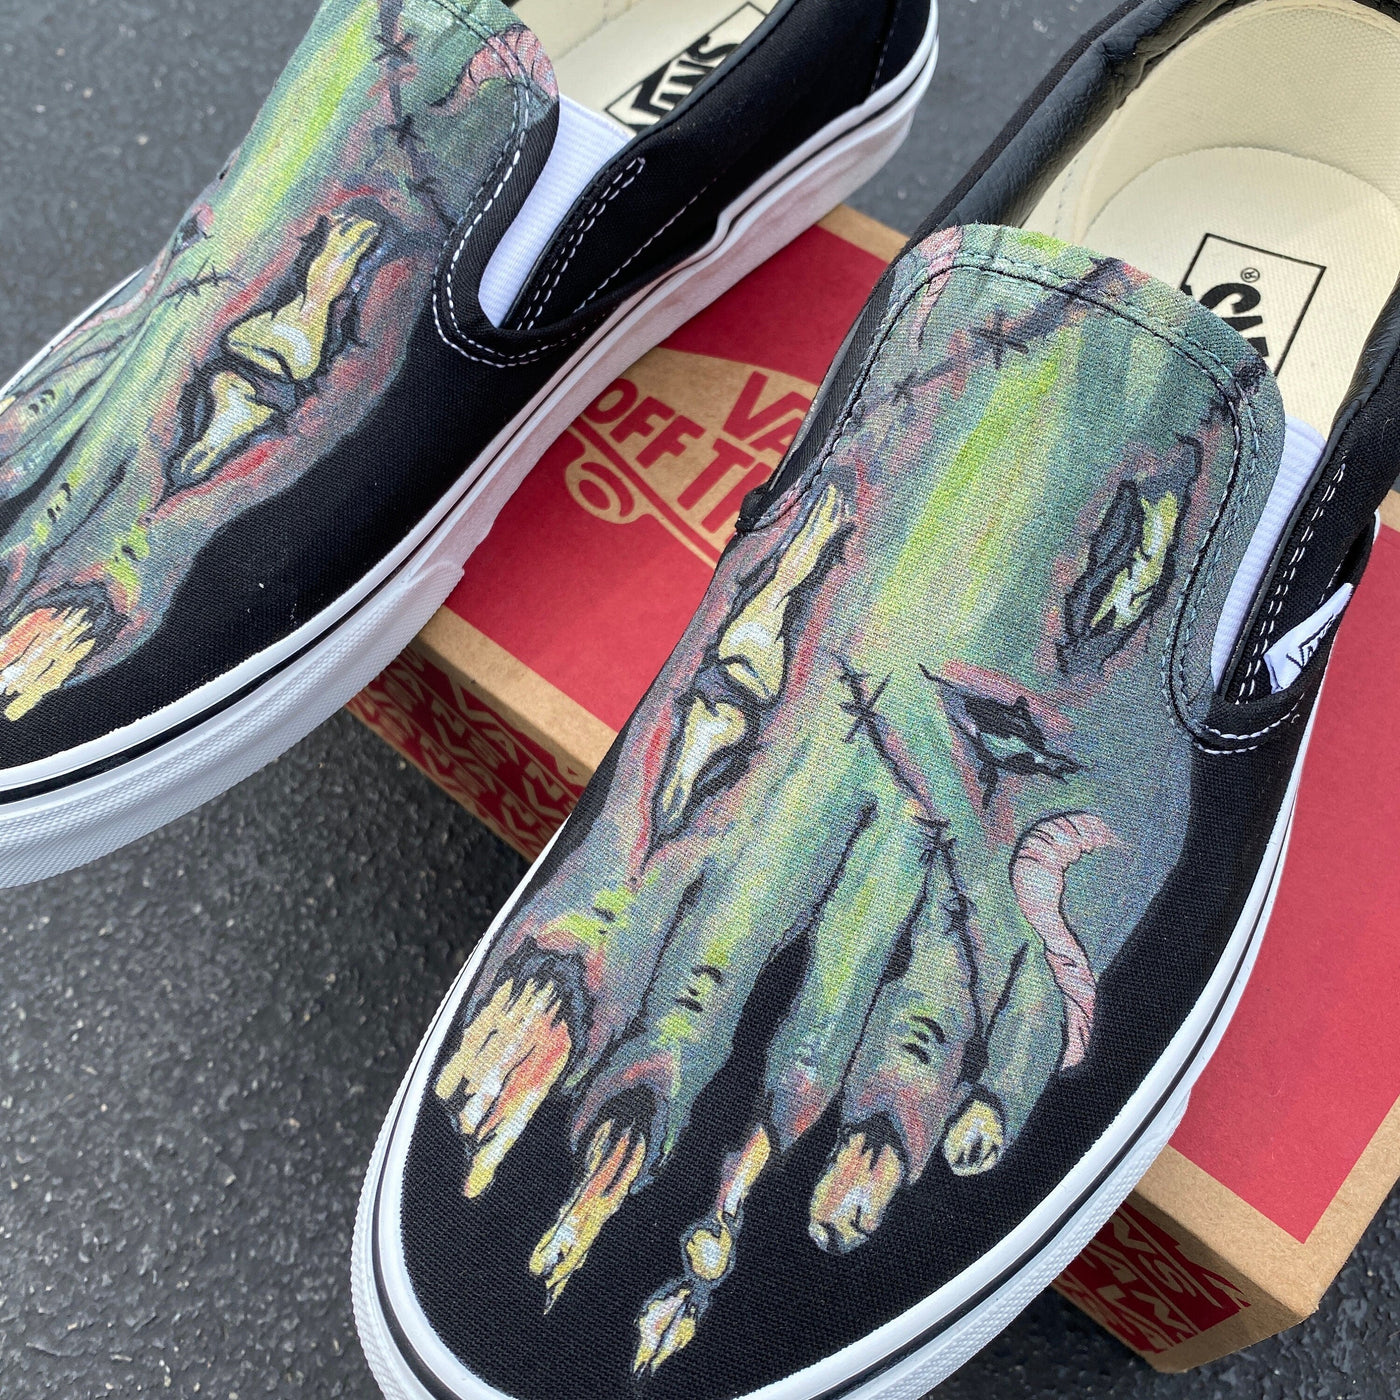 Custom Slip On Vans, Zombie Feet Vans